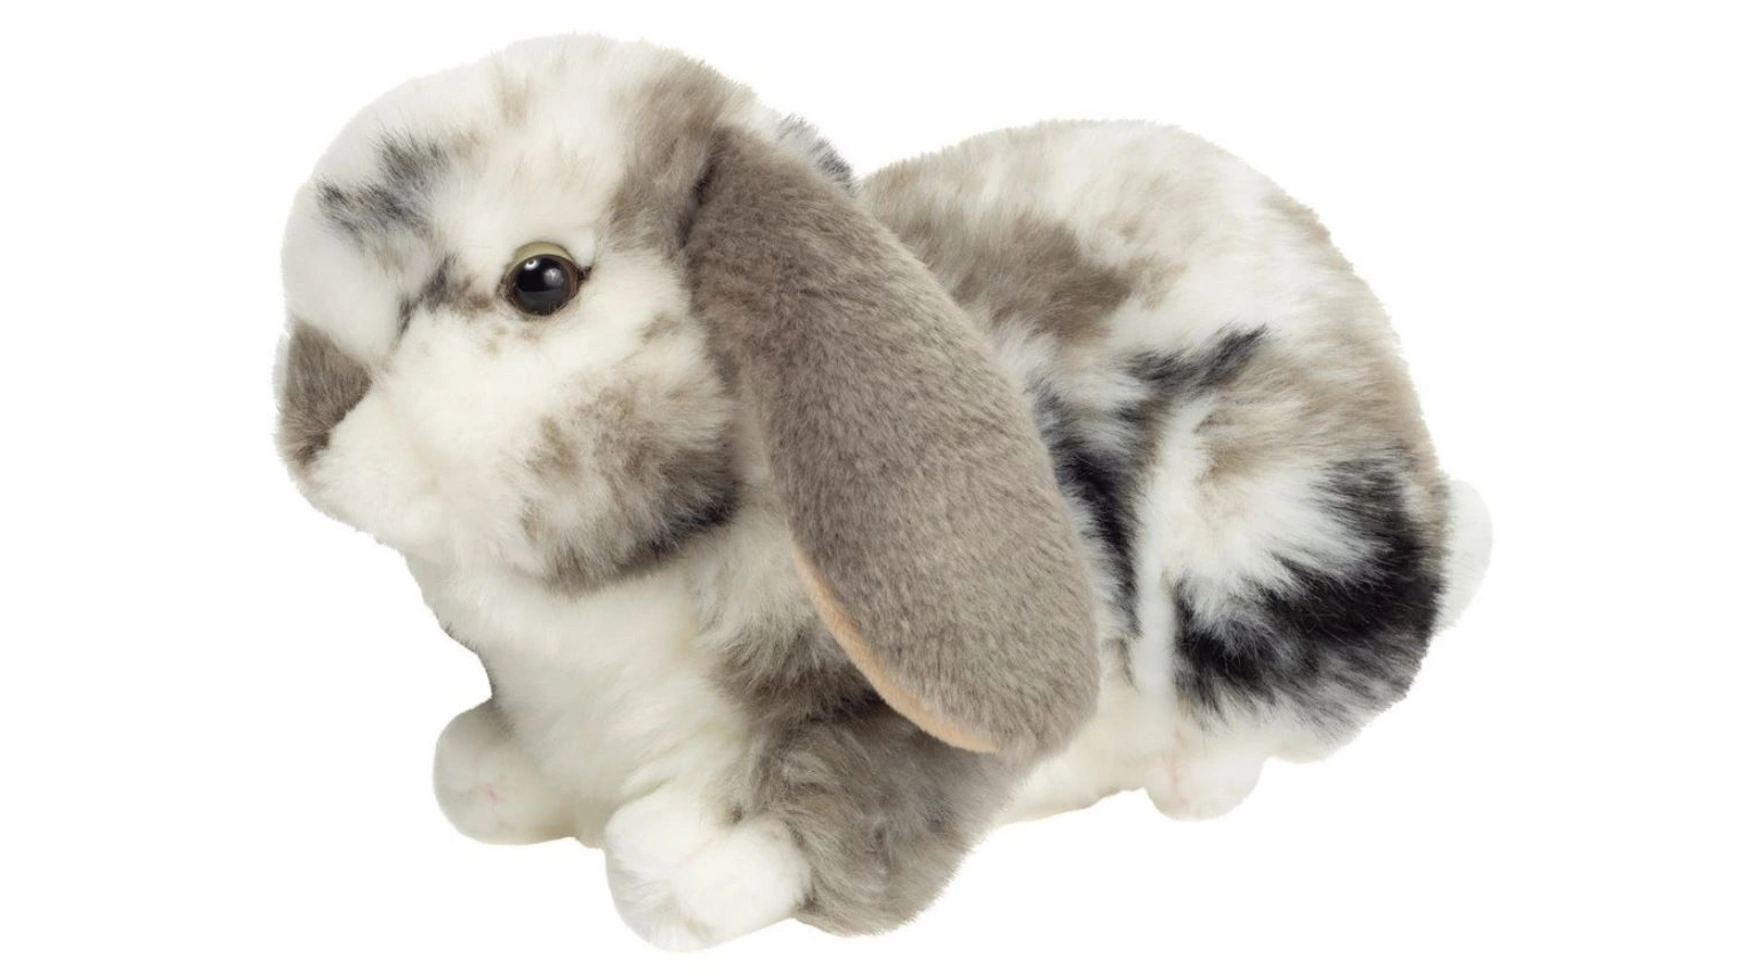 Мягкая игрушка баранчик кролик серо-белый в крапинку 23 см Teddy-Hermann мягкая игрушка кролик бежевый 23 см teddy hermann